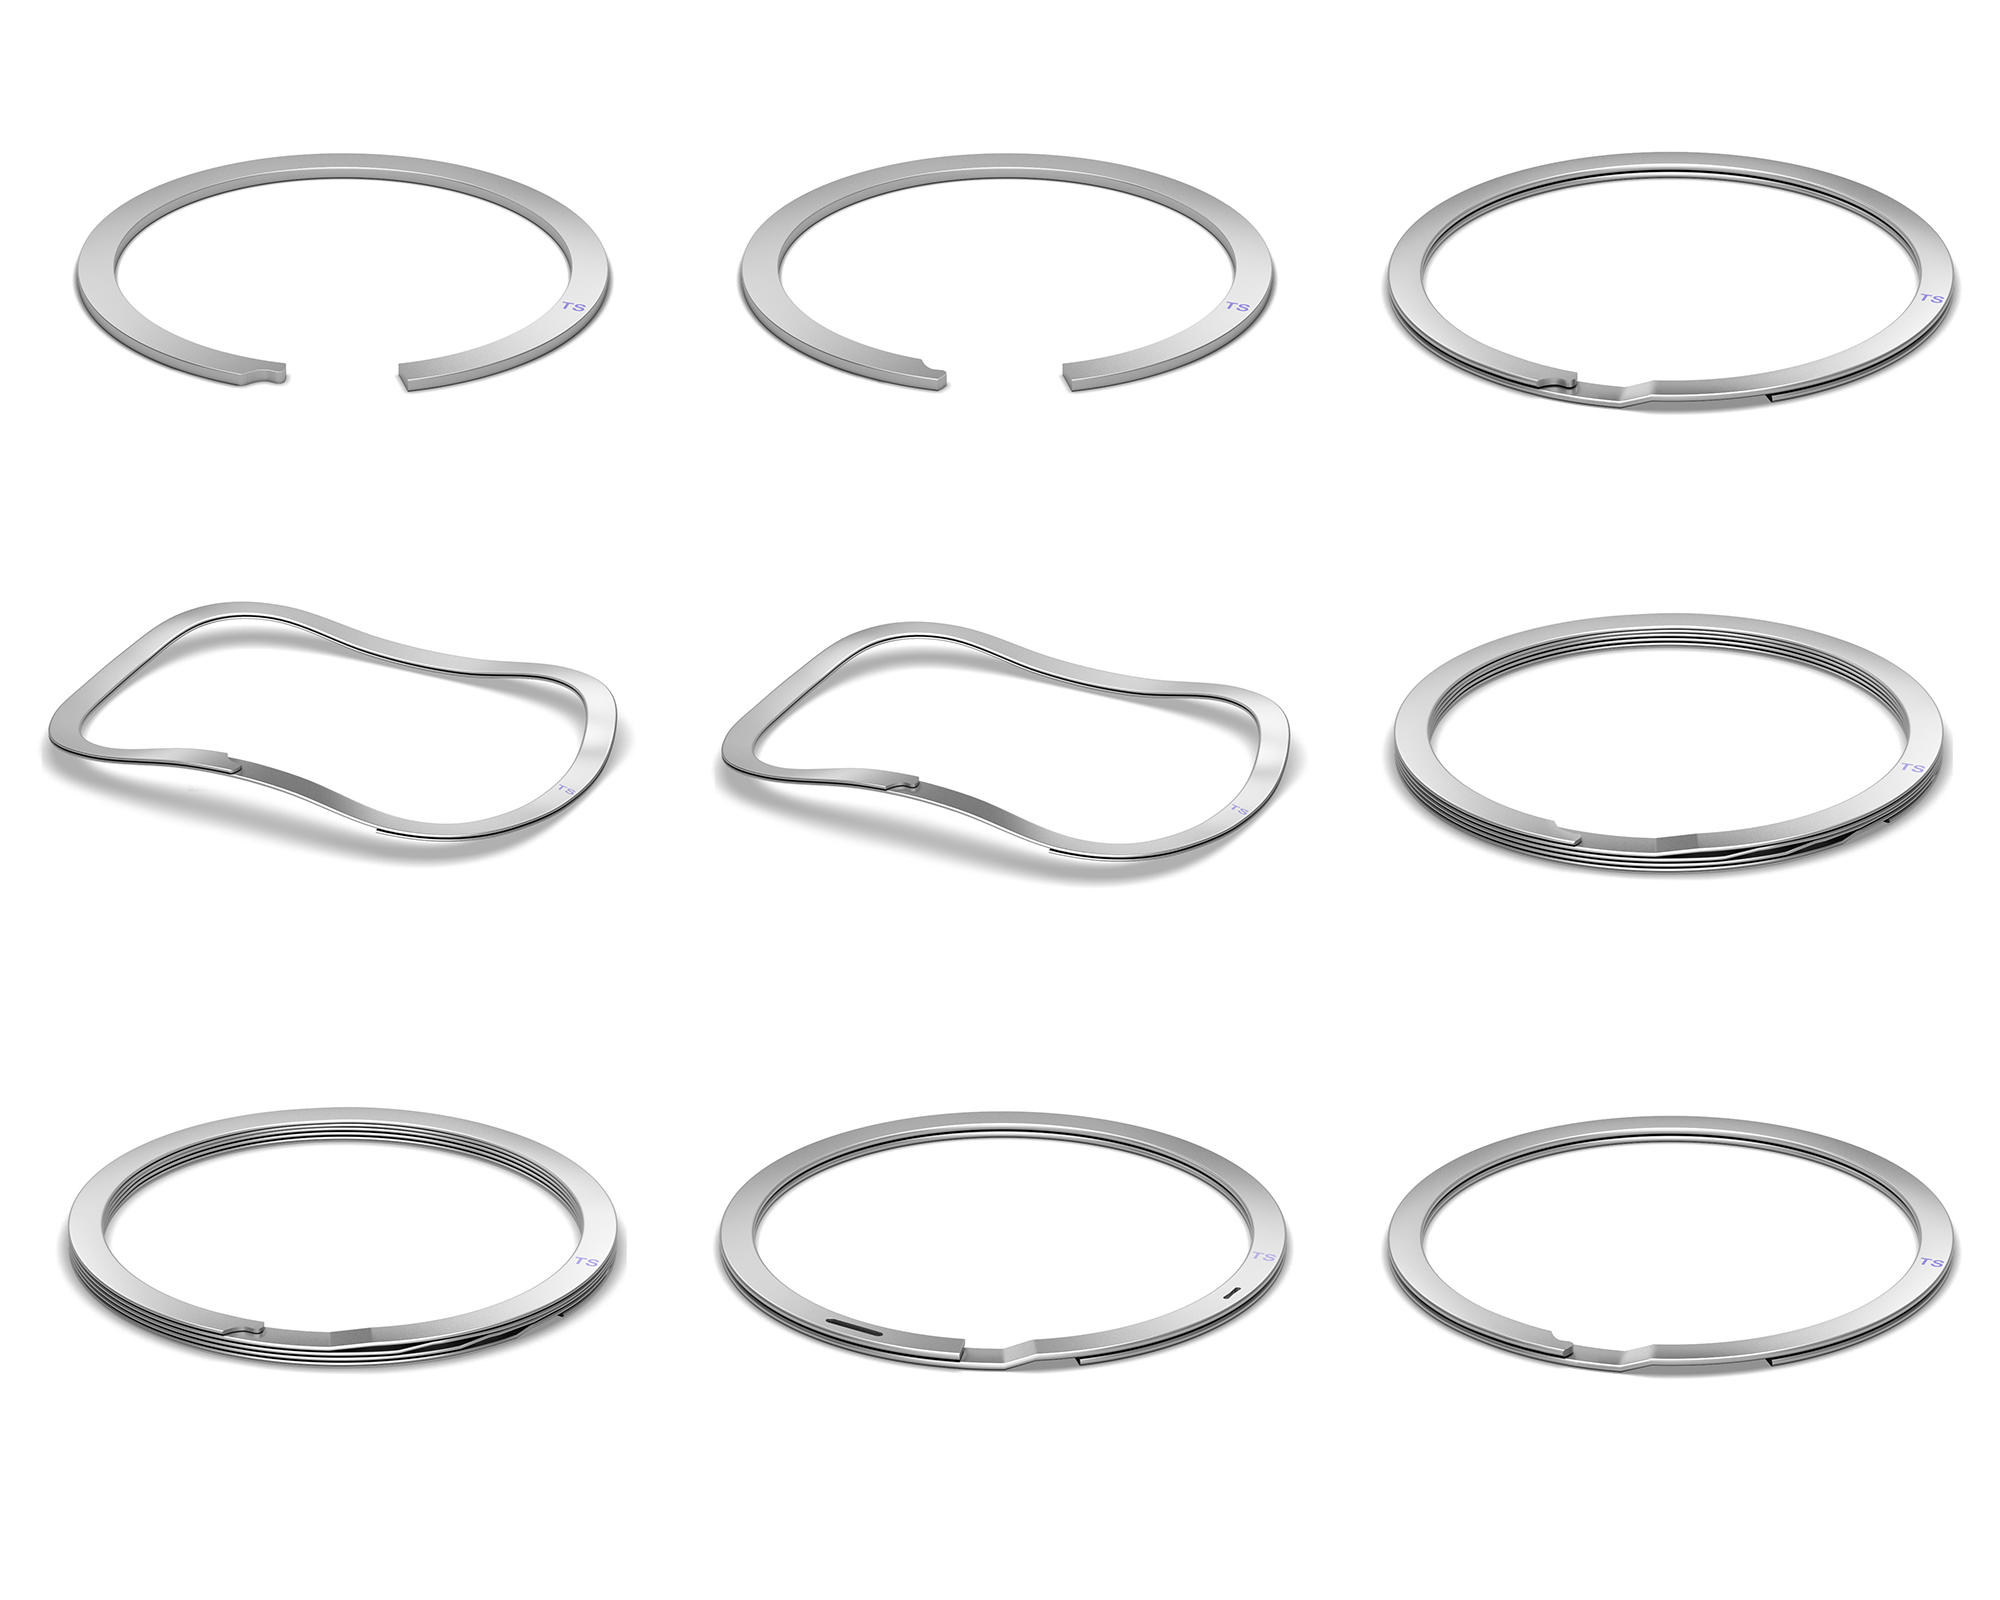 Metal Ring Manufacturers